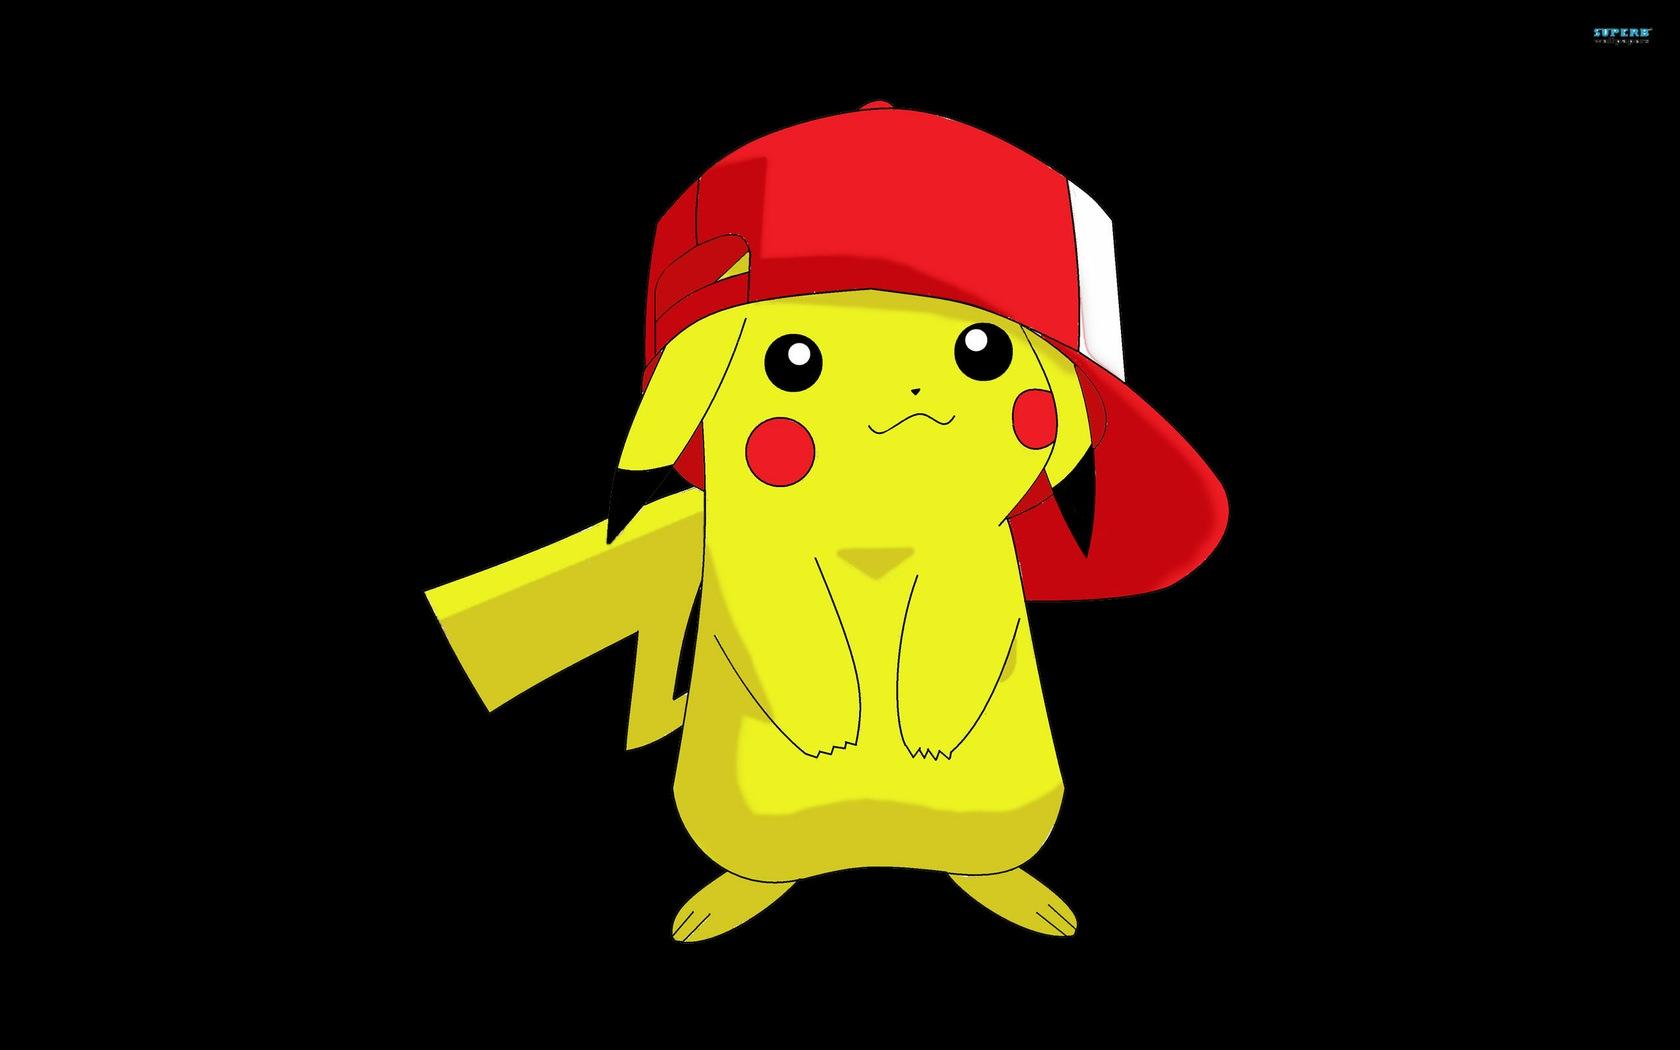 Pikachu Pokemon HD Wallpaper 2 Are Free HD Wallpaper Those